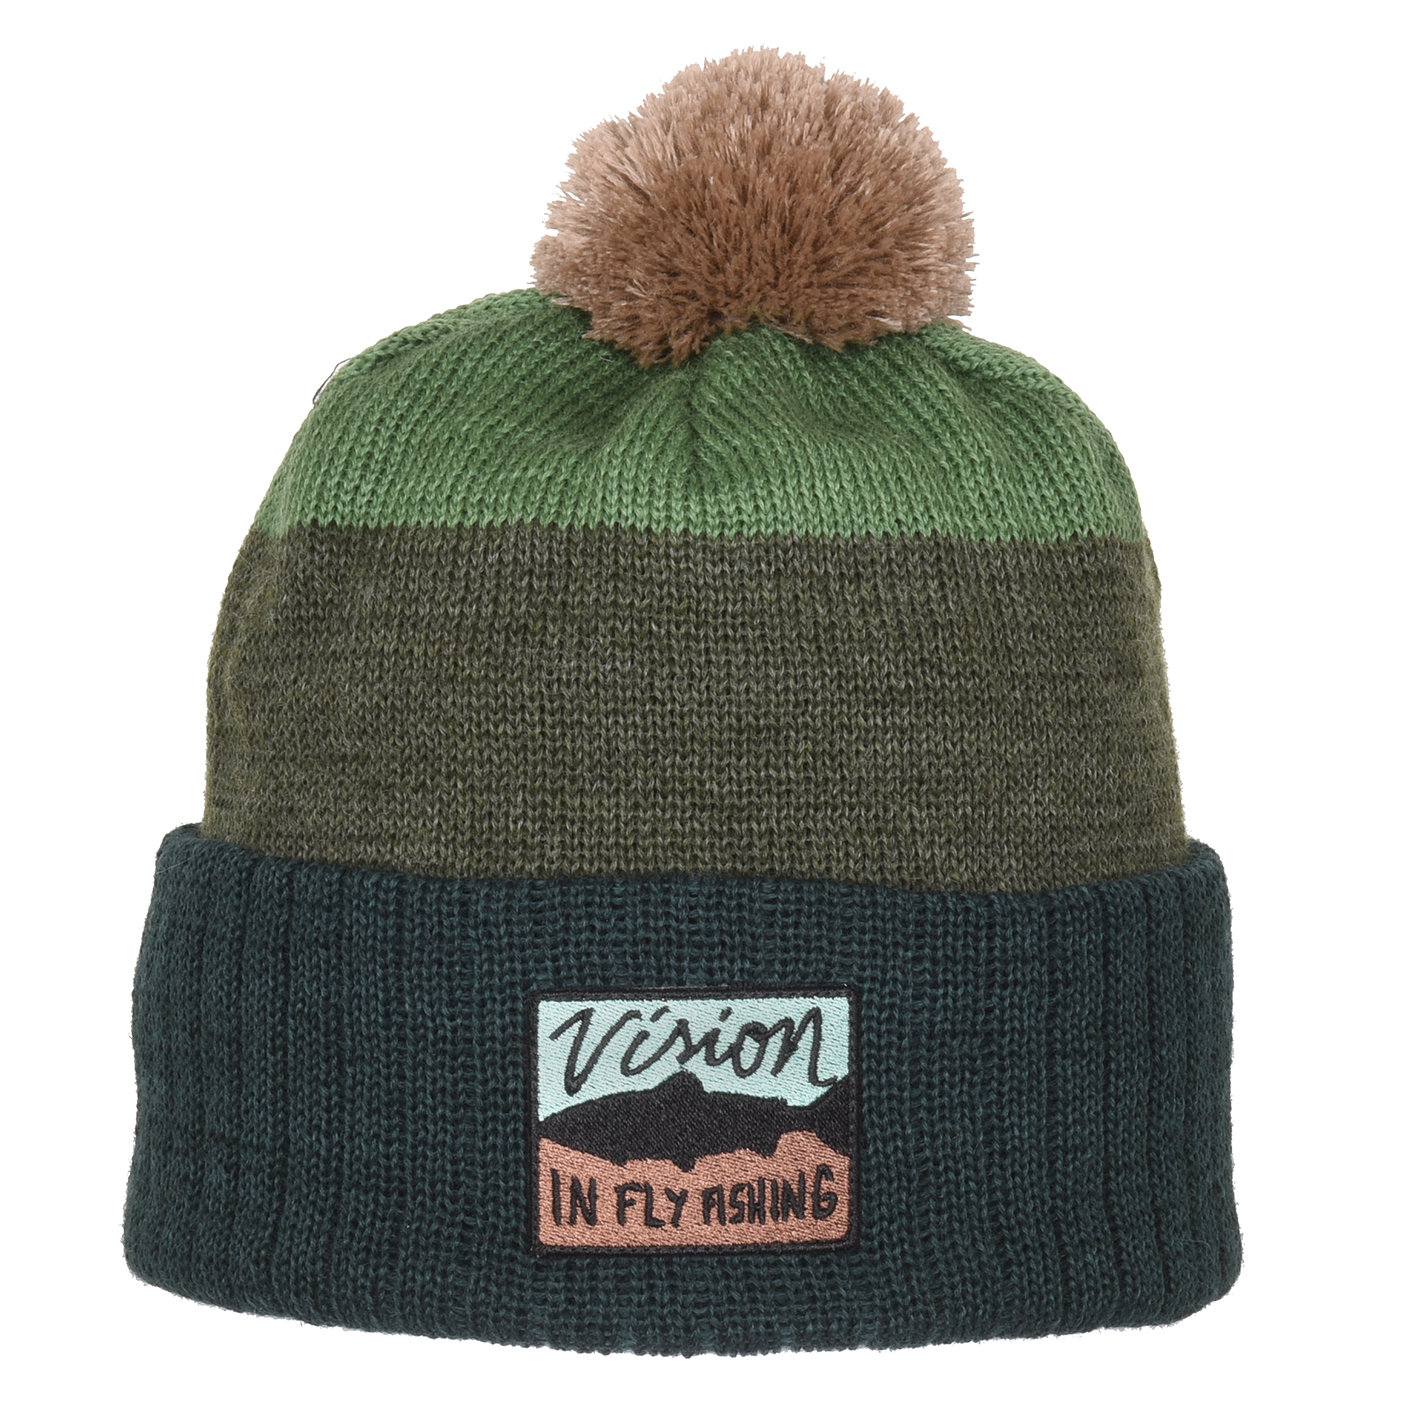 Vision Merino žieminė kepurė Tupsu